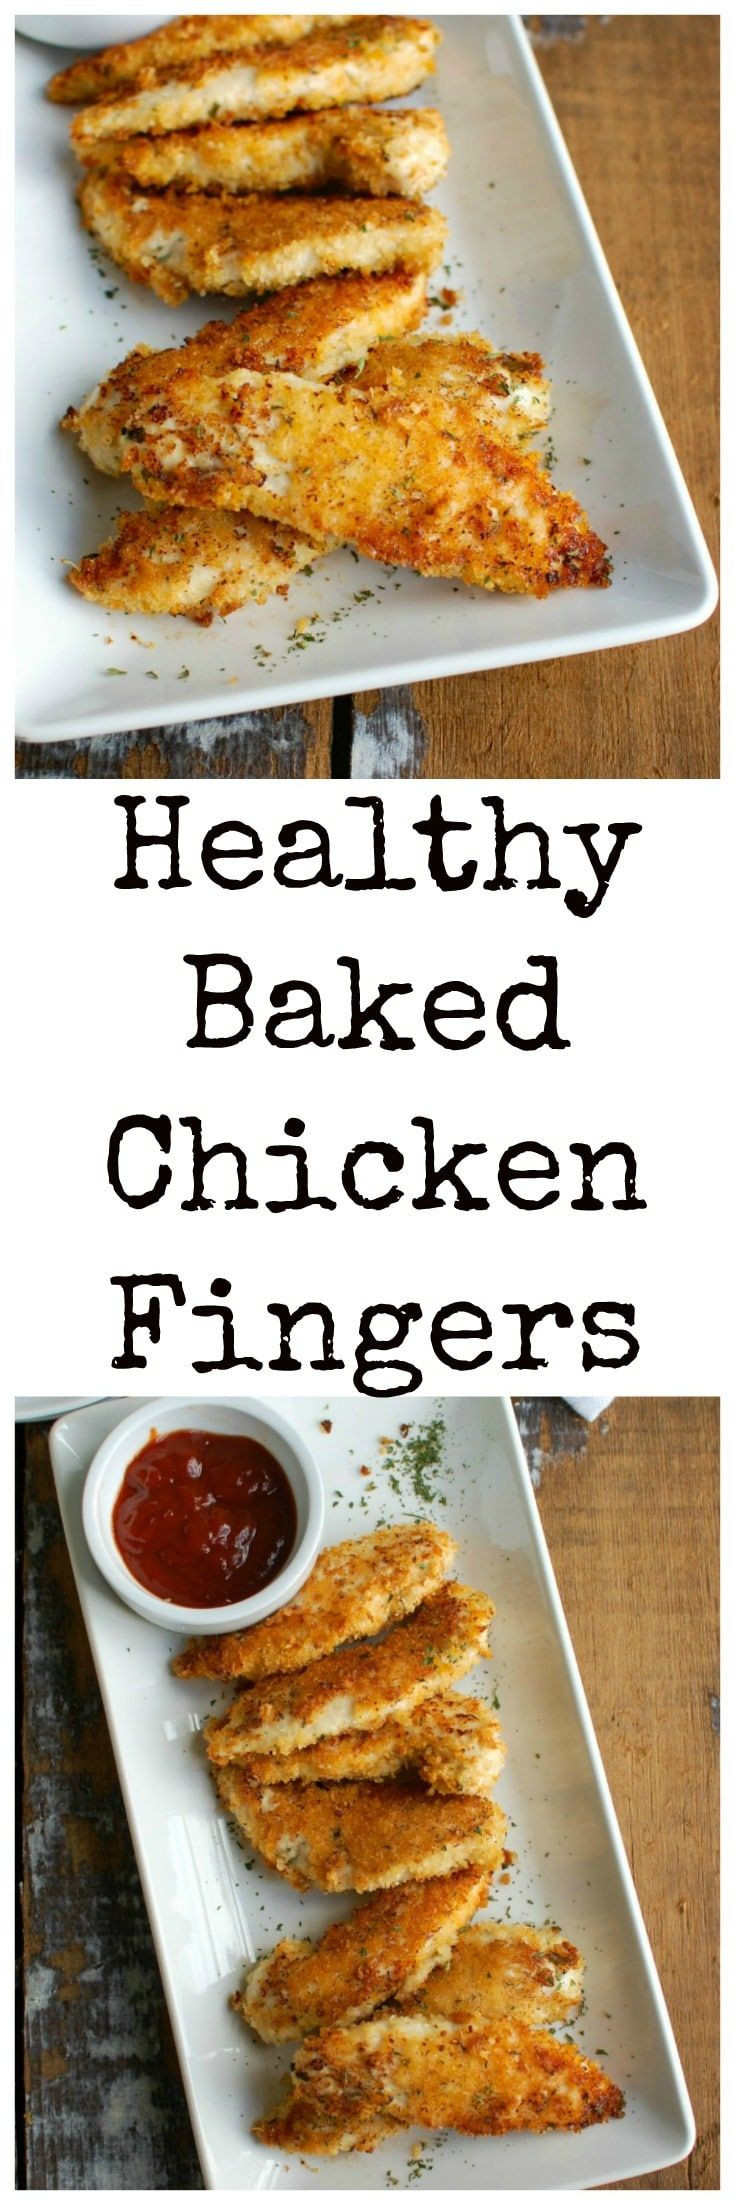 Healthy Oven Baked Chicken Recipes
 De 25 bedste idéer inden for Chicken finger recipes på